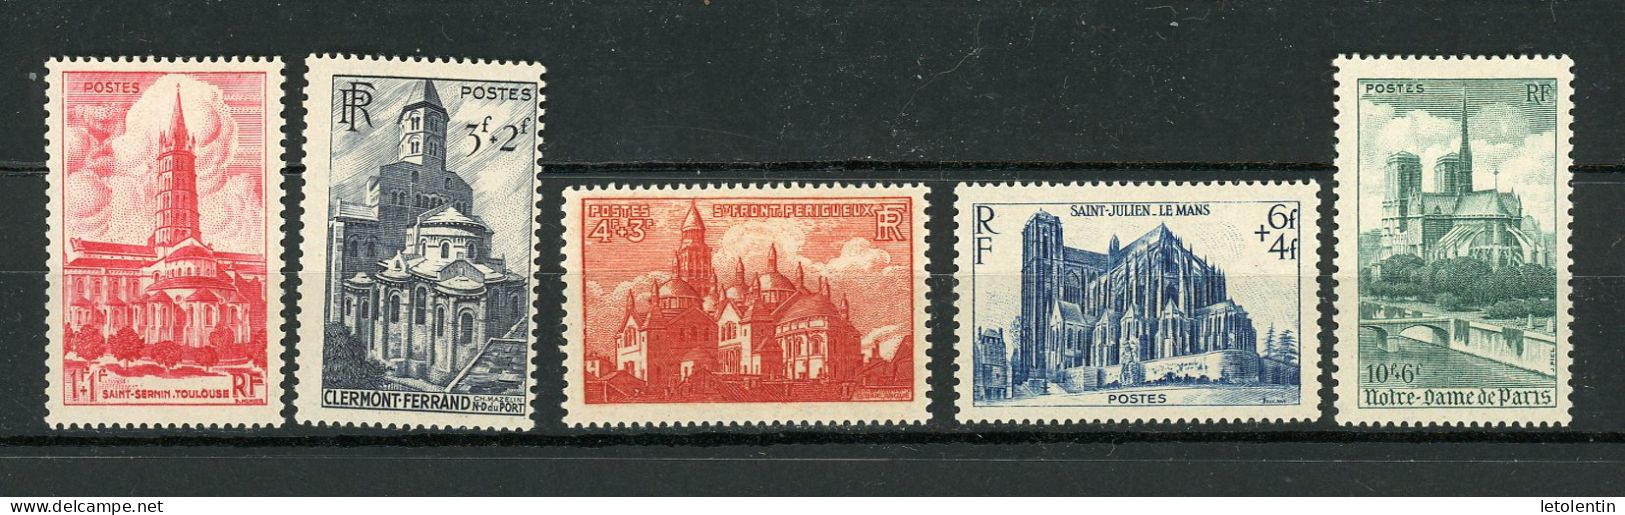 FRANCE - CATHEDRALES - N° Yvert  772/776* - Unused Stamps